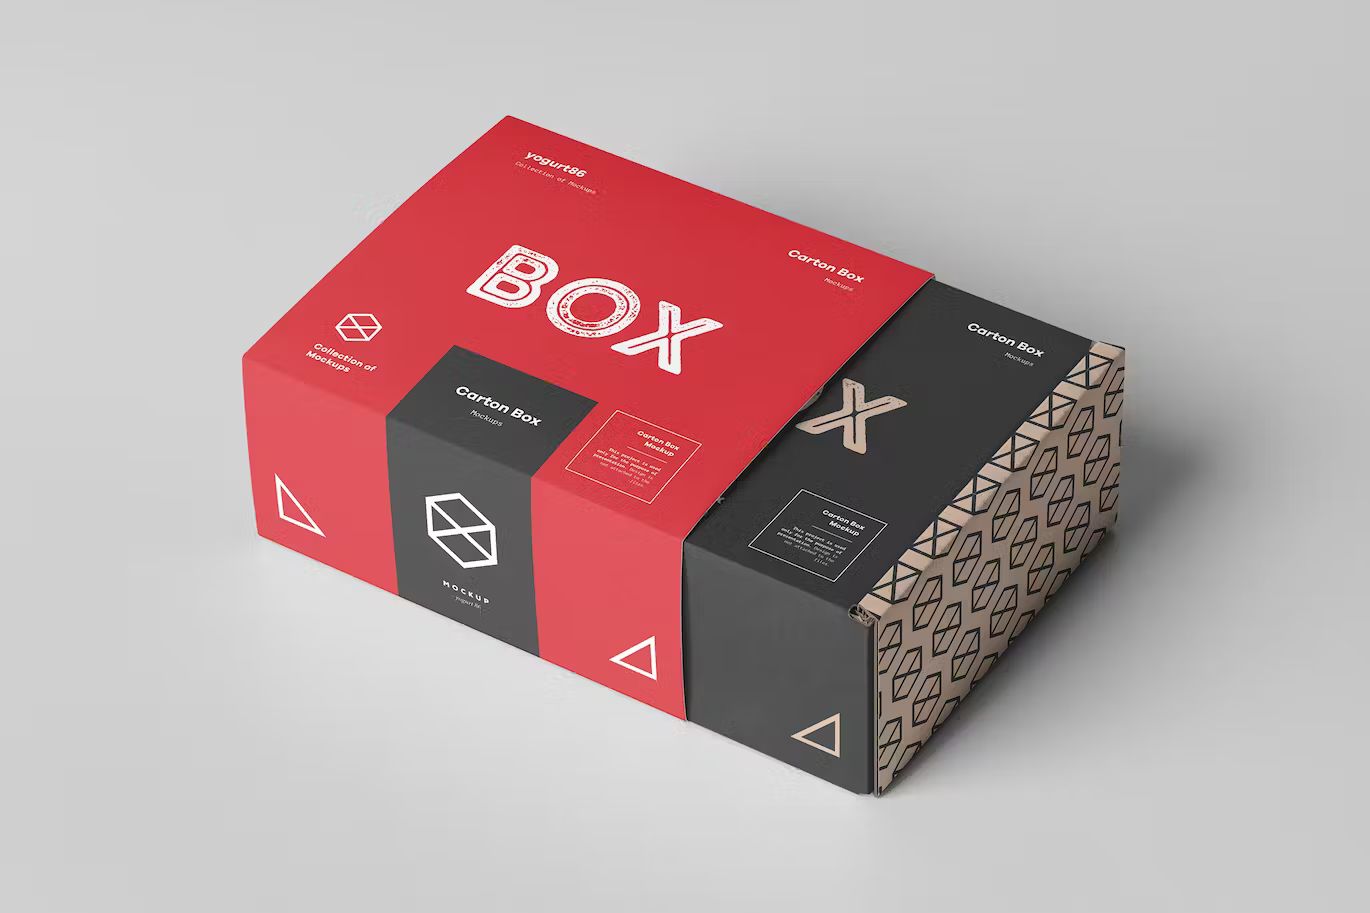 瓦楞纸产品包装纸箱设计展示样机模板 Carton Box Mockup 95x85x42